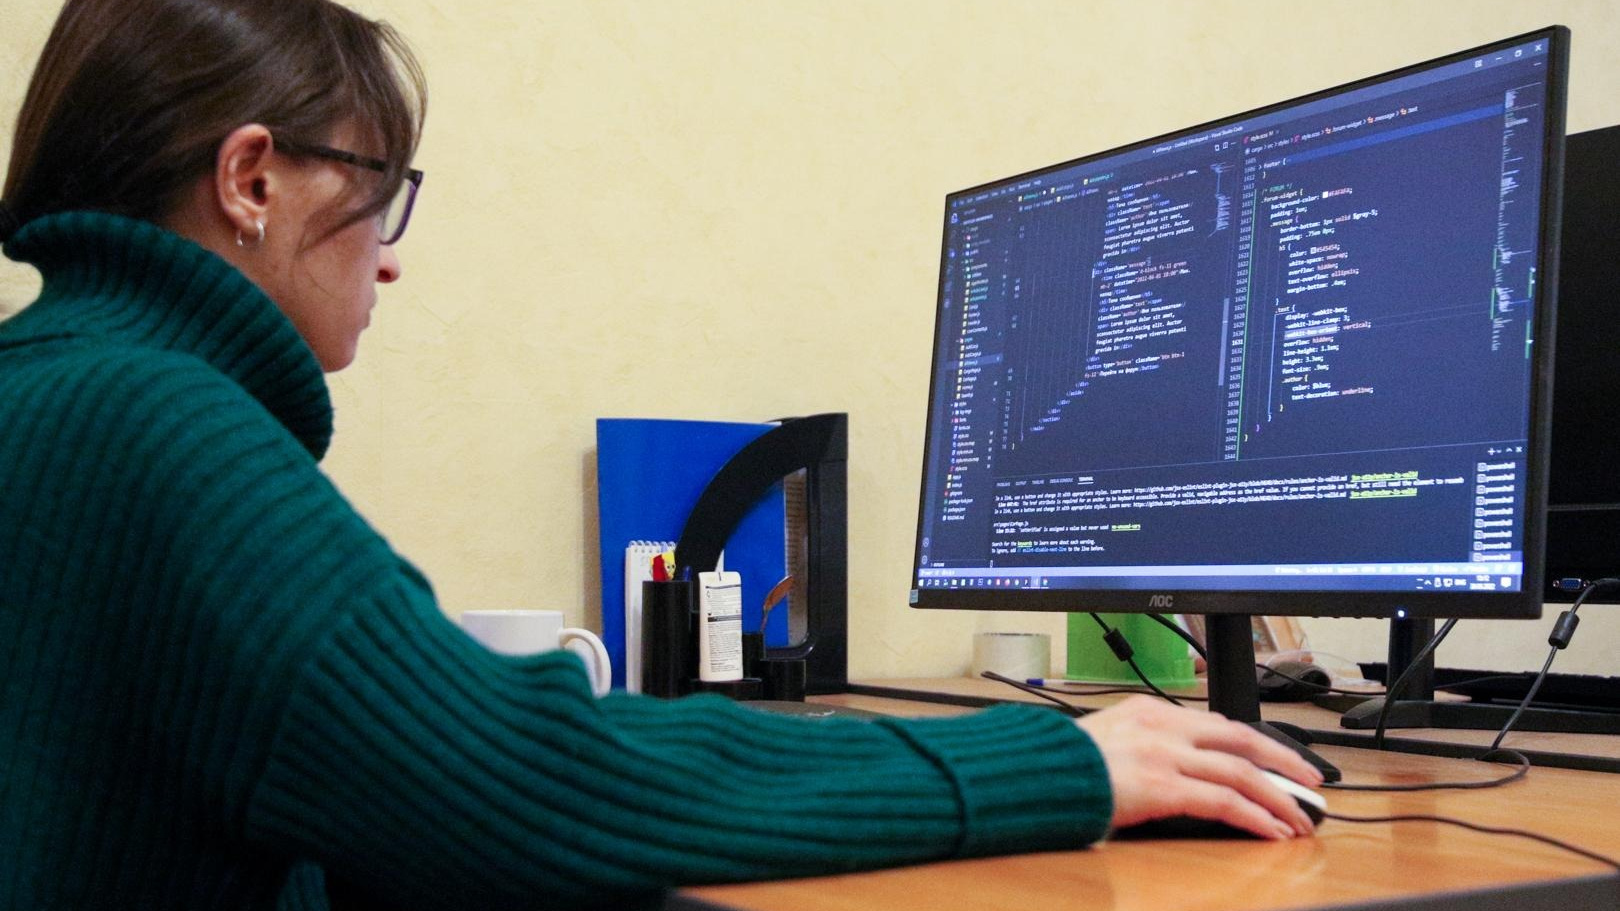 Казанцы жалуются на сбой у «Уфанет». Провайдер объяснил проблемы с интернетом серьёзной DDoS-атакой